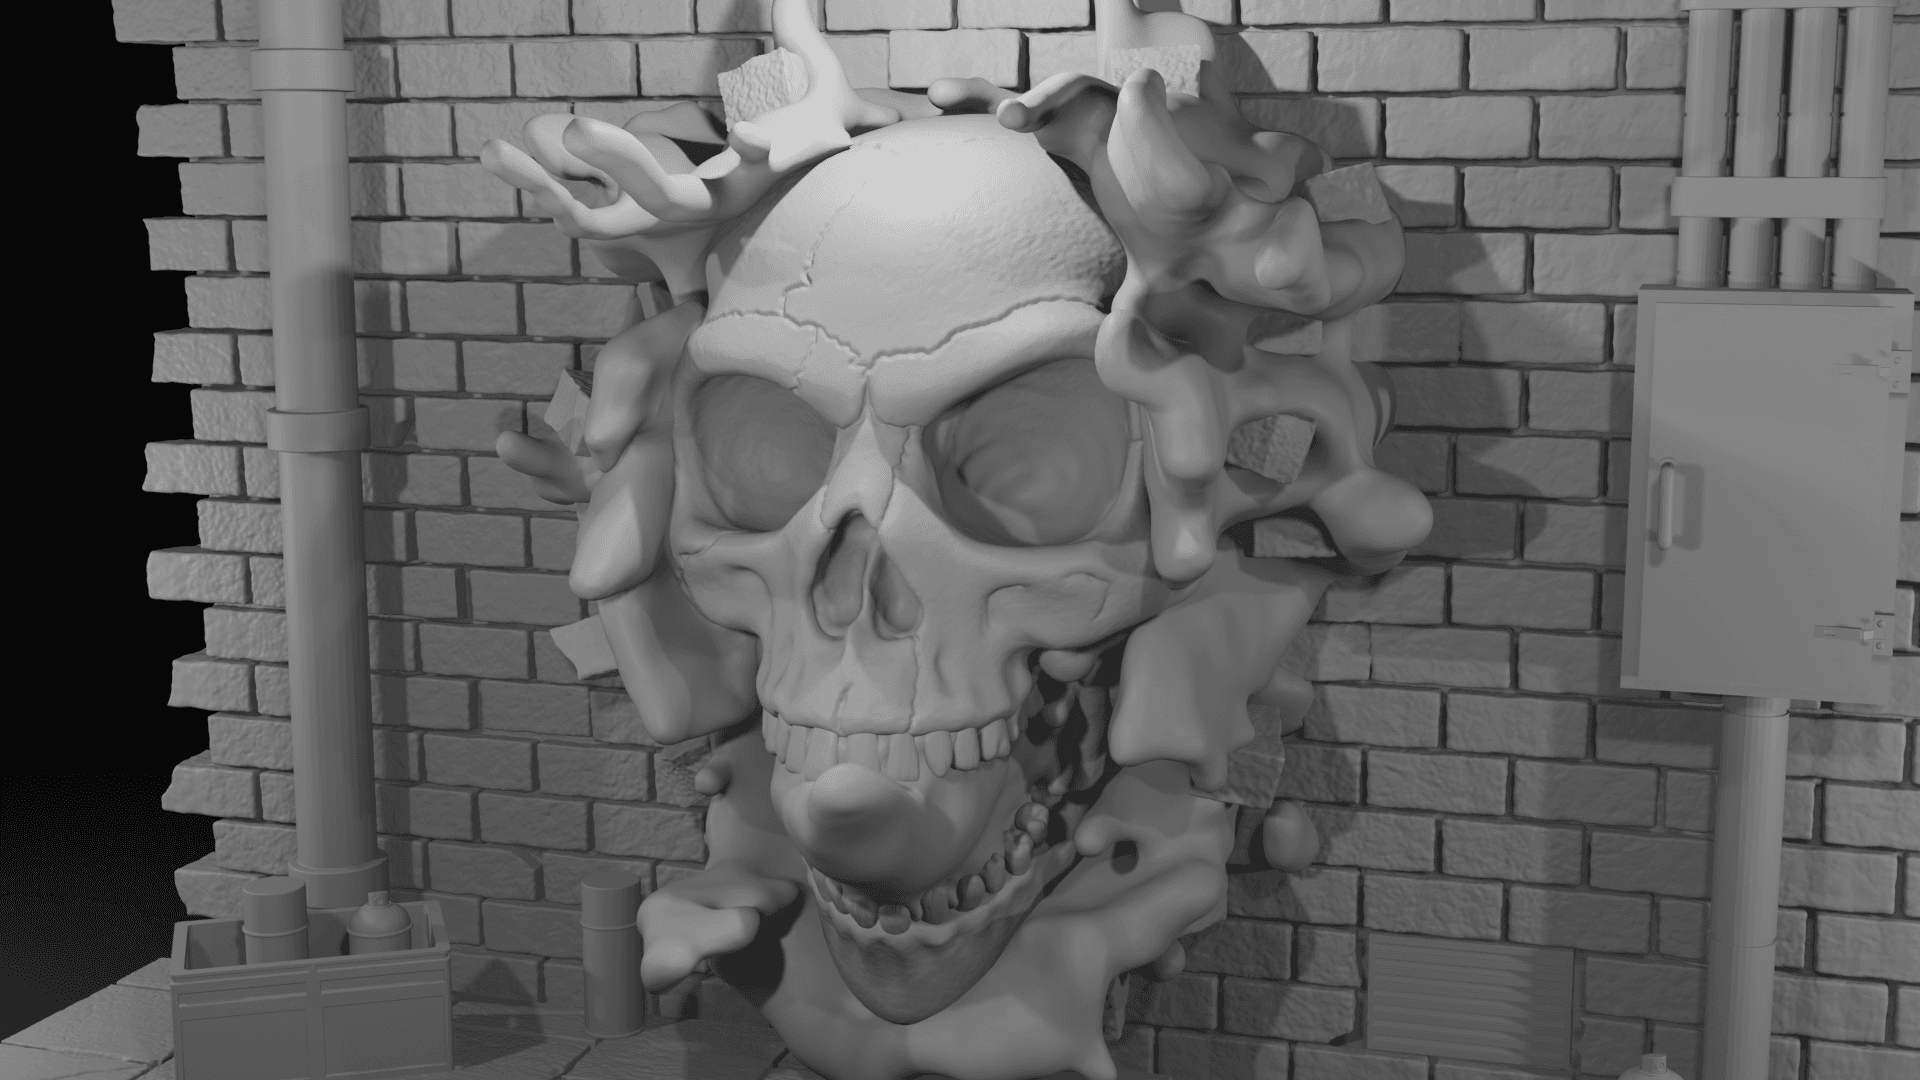 3D Graffiti - Skull explosion  3d model